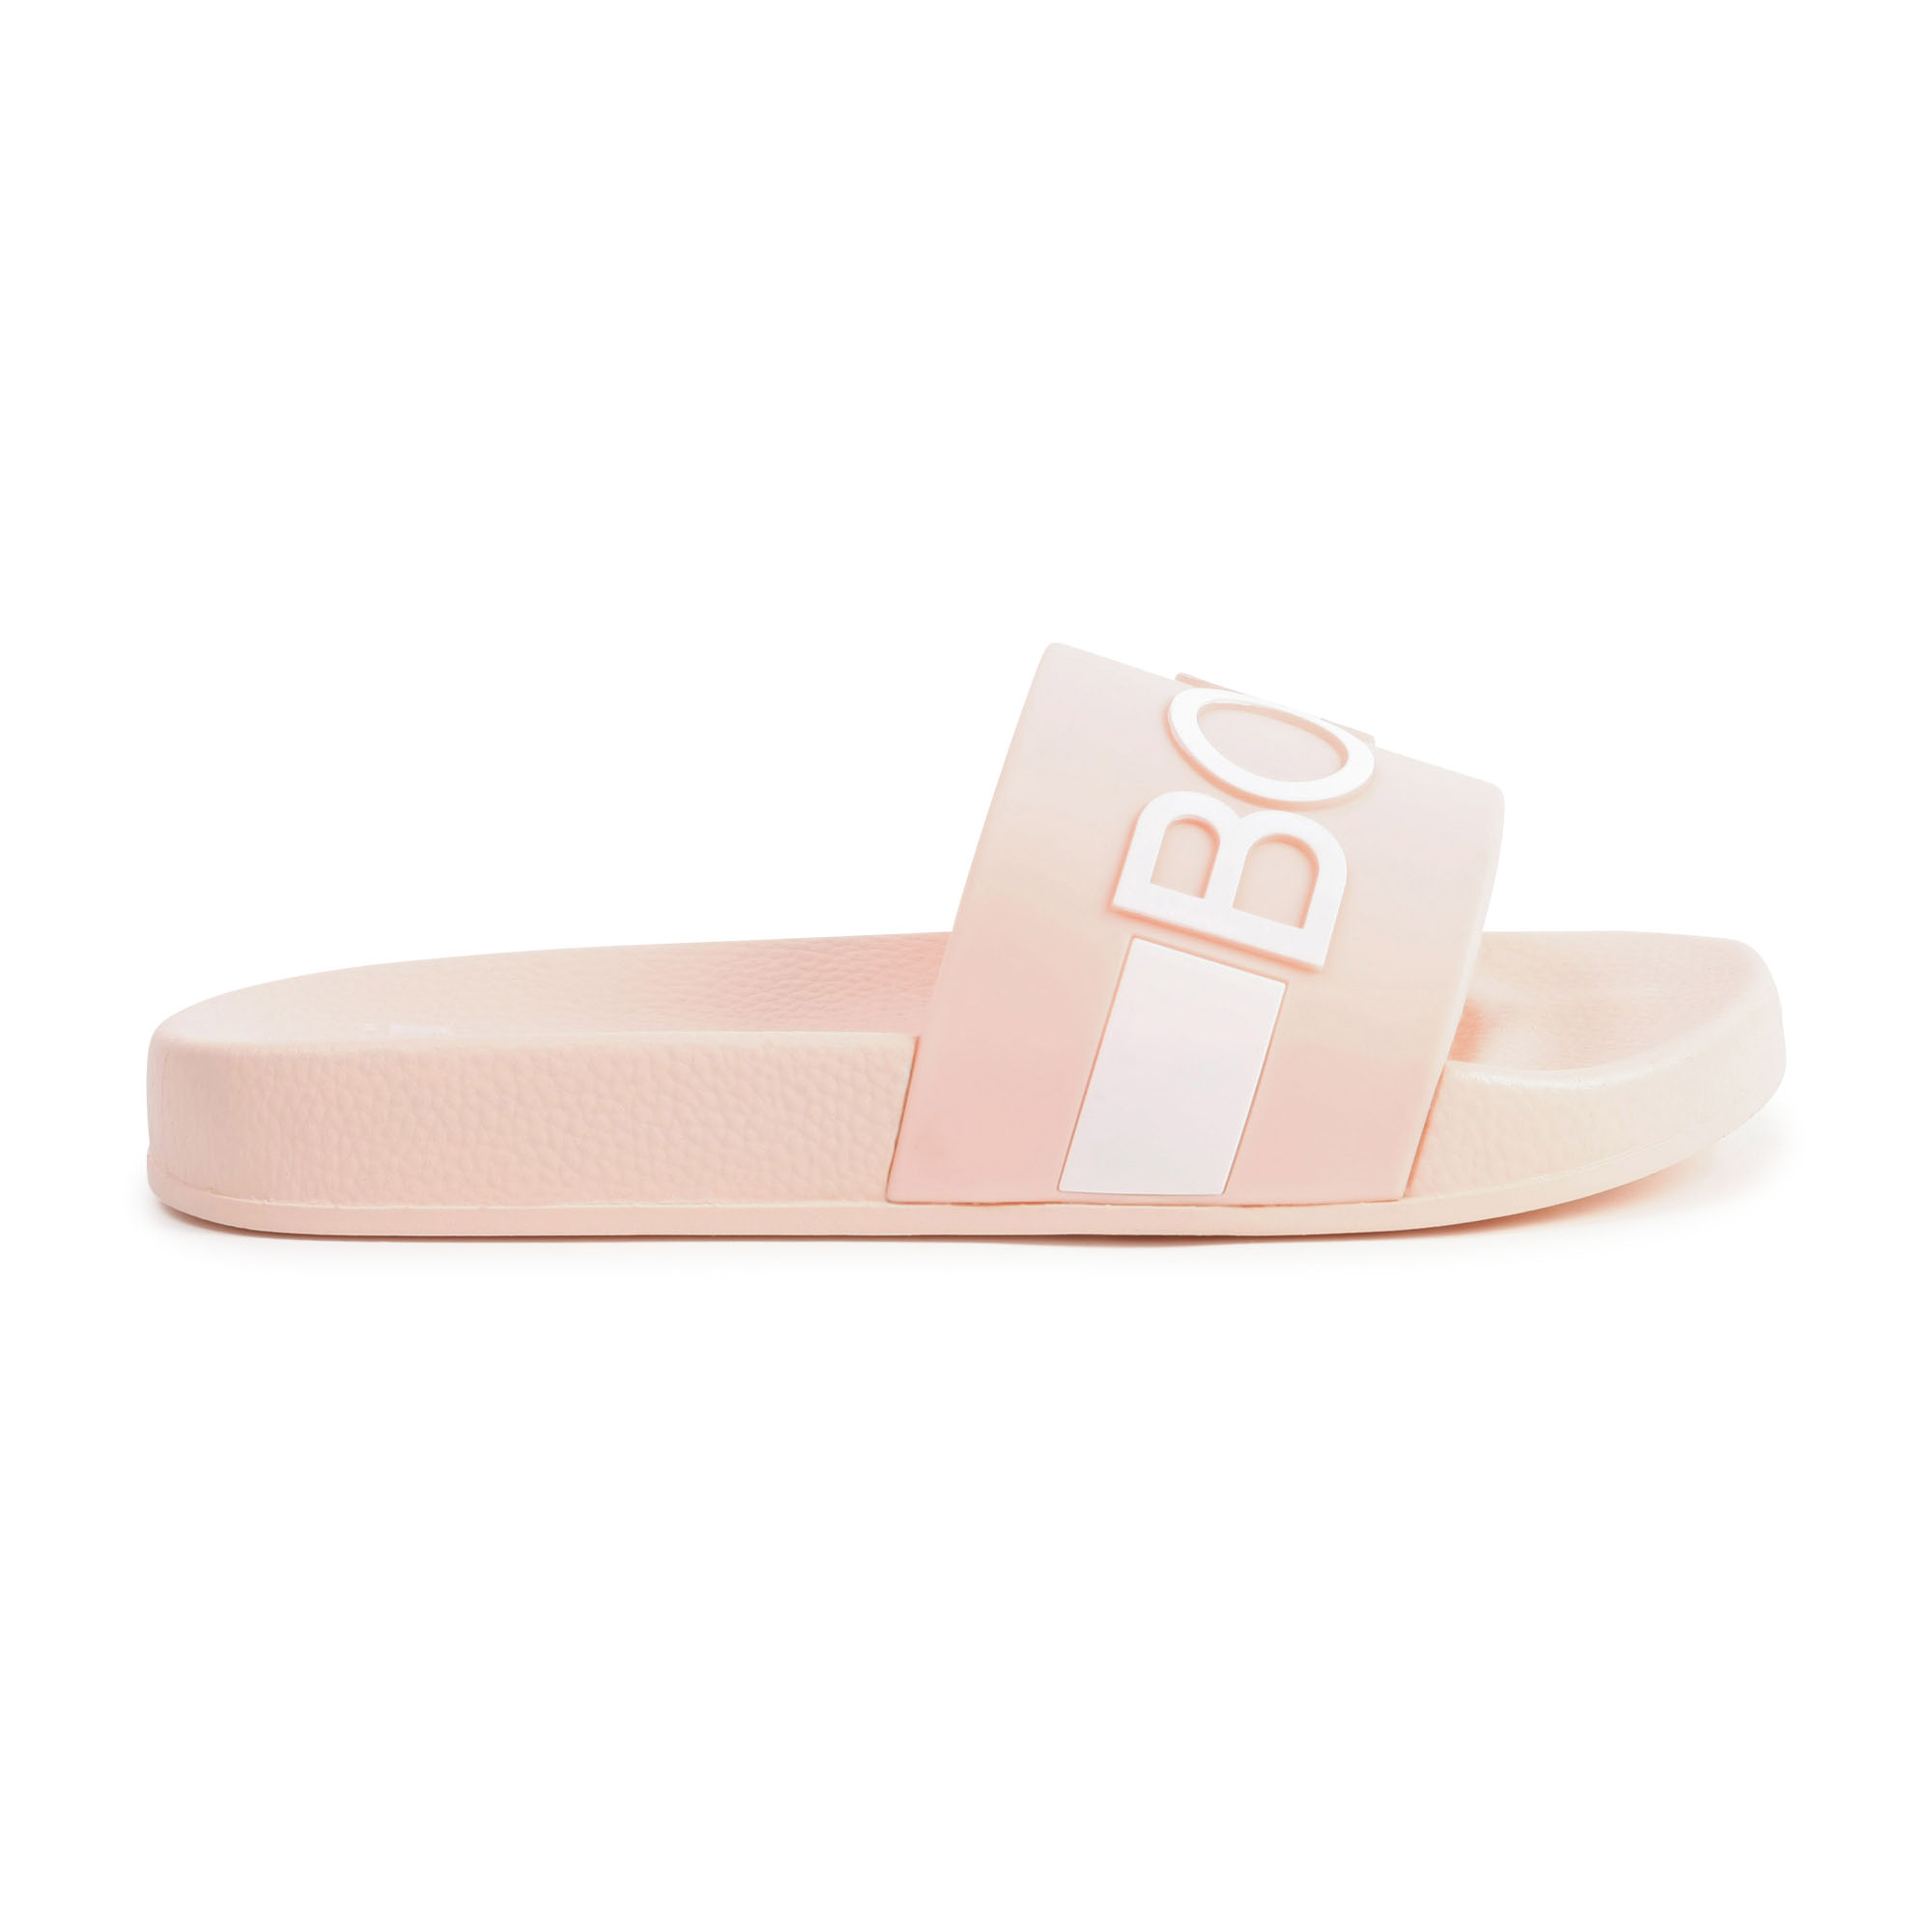 Flip-flops with raised logo BOSS for GIRL